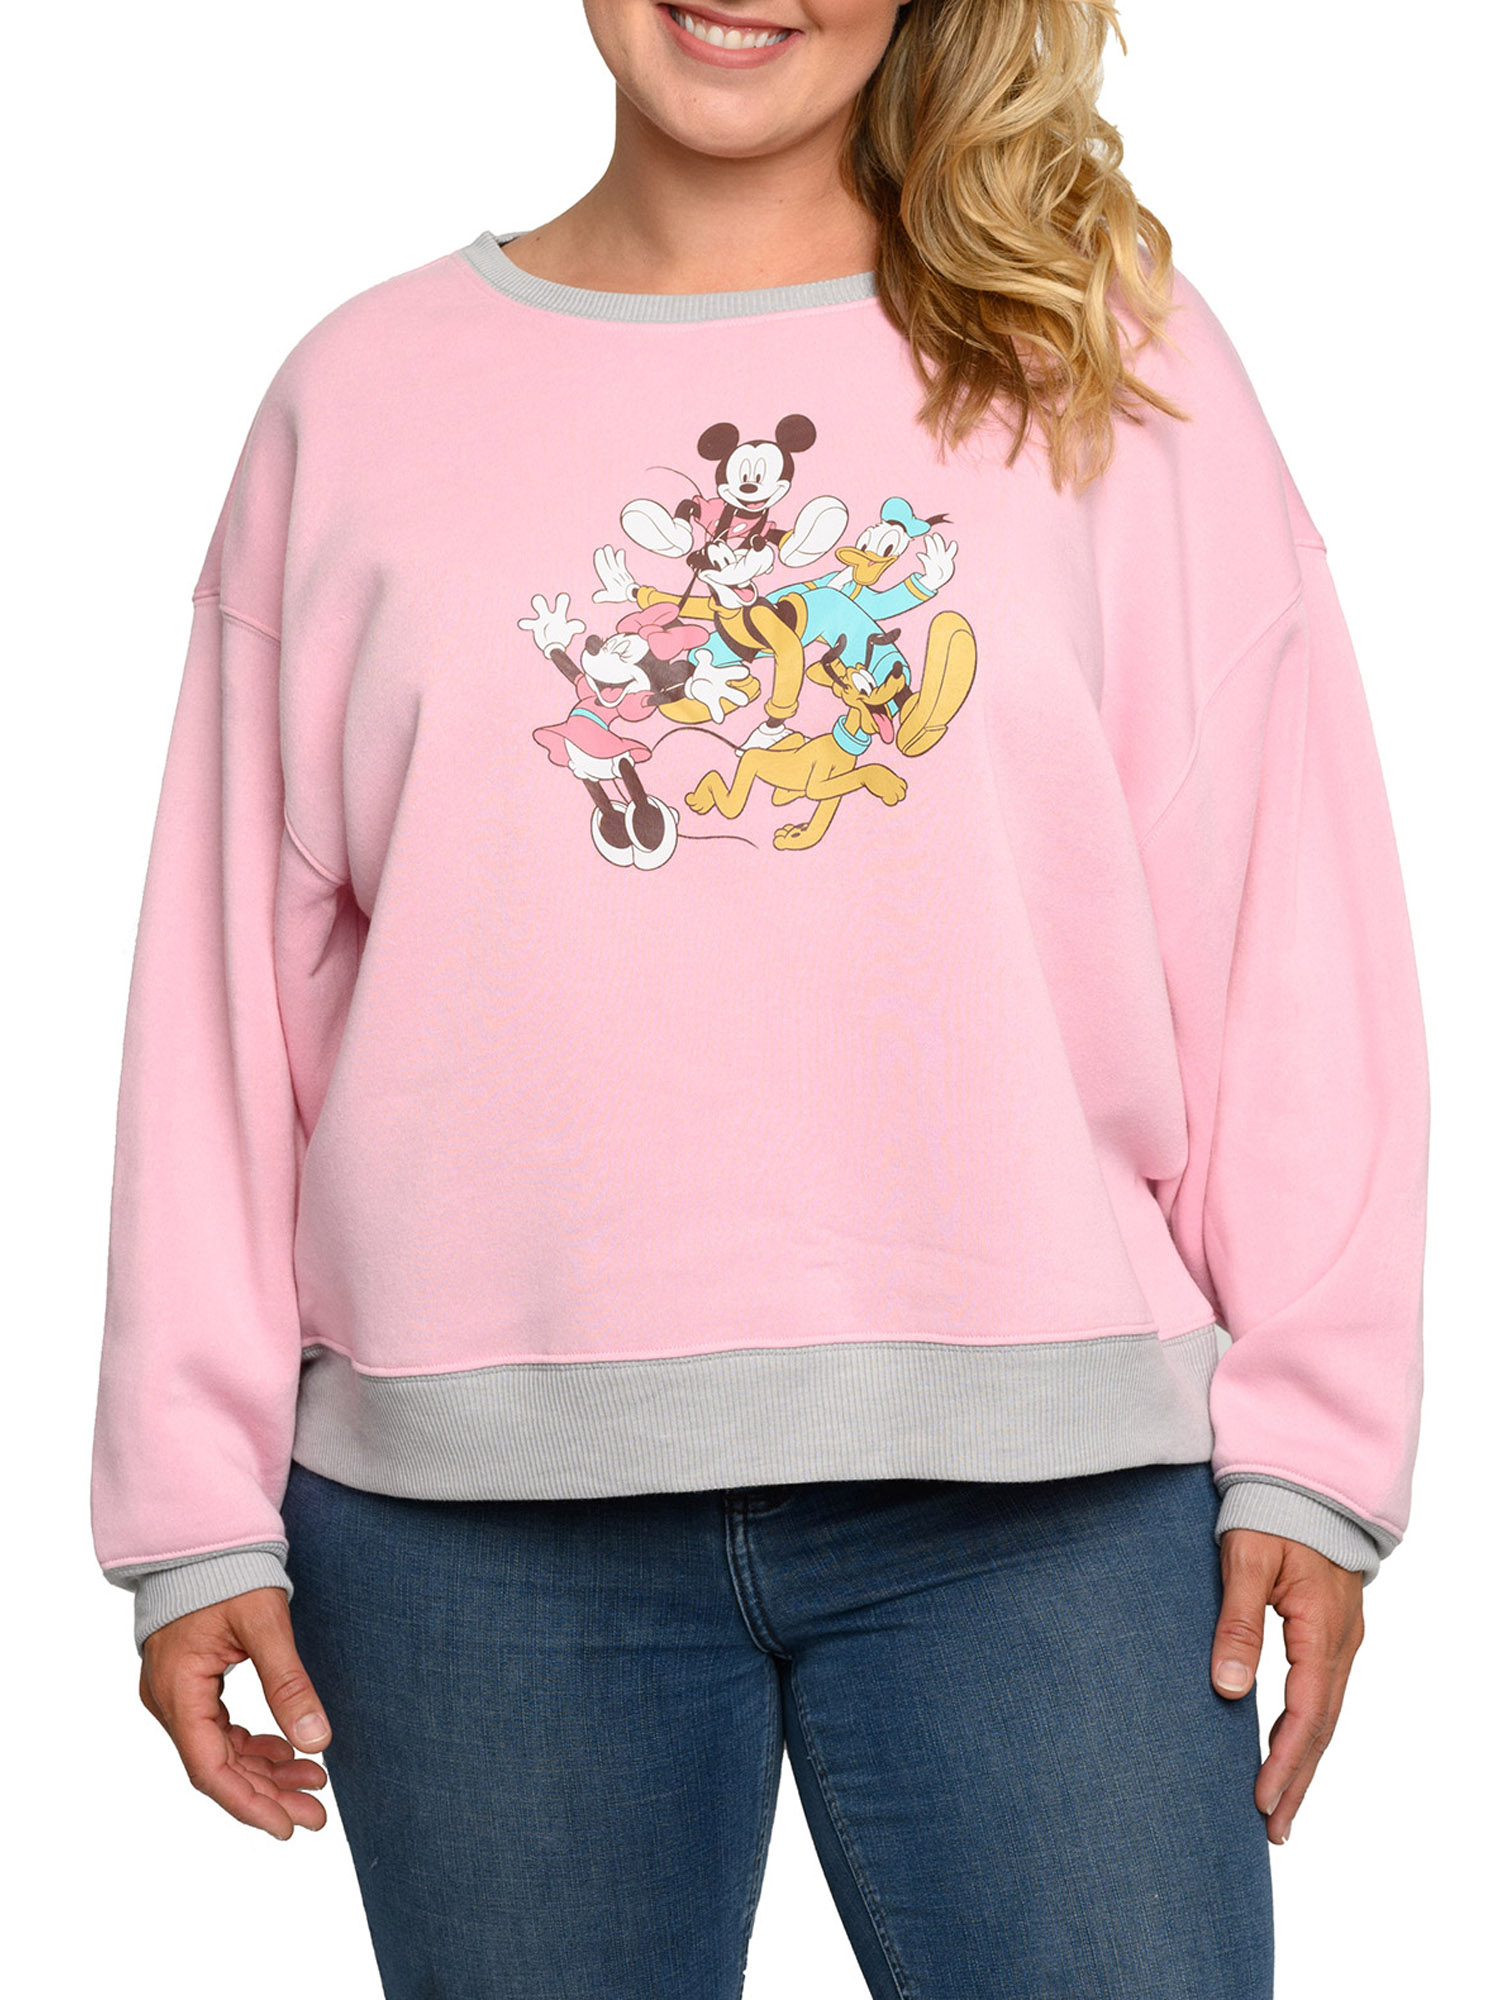 Disney Womens Plus Size Mickey Mouse & Friends Fleece Long Sleeve Sweatshirt Pink Grey